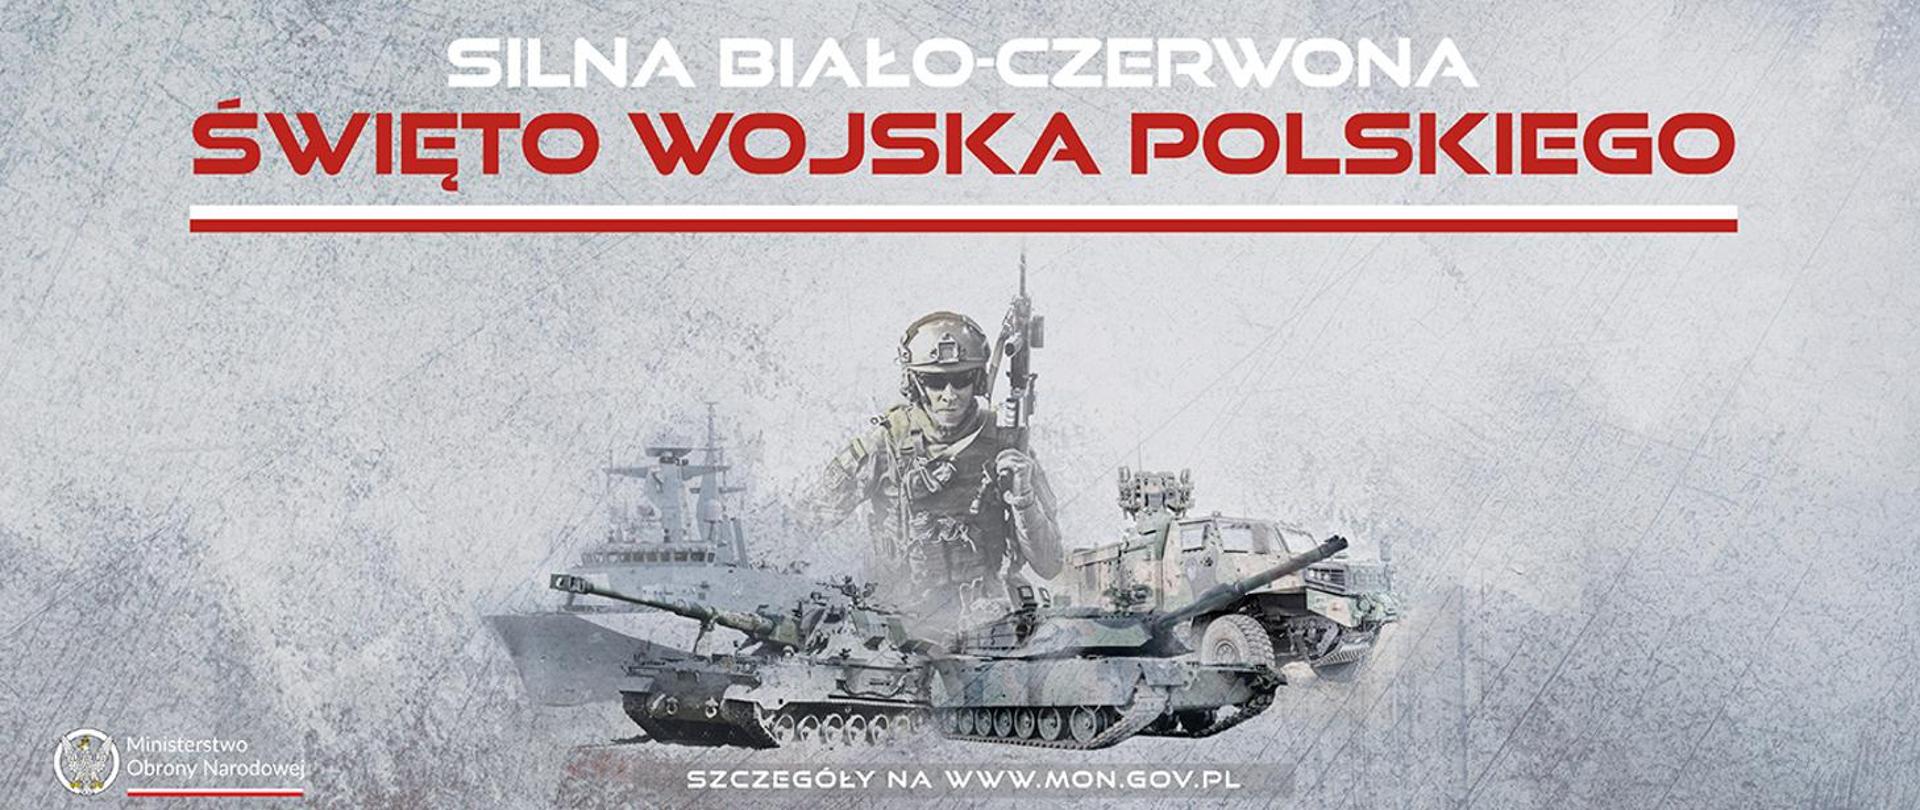 święto wojska polskiego